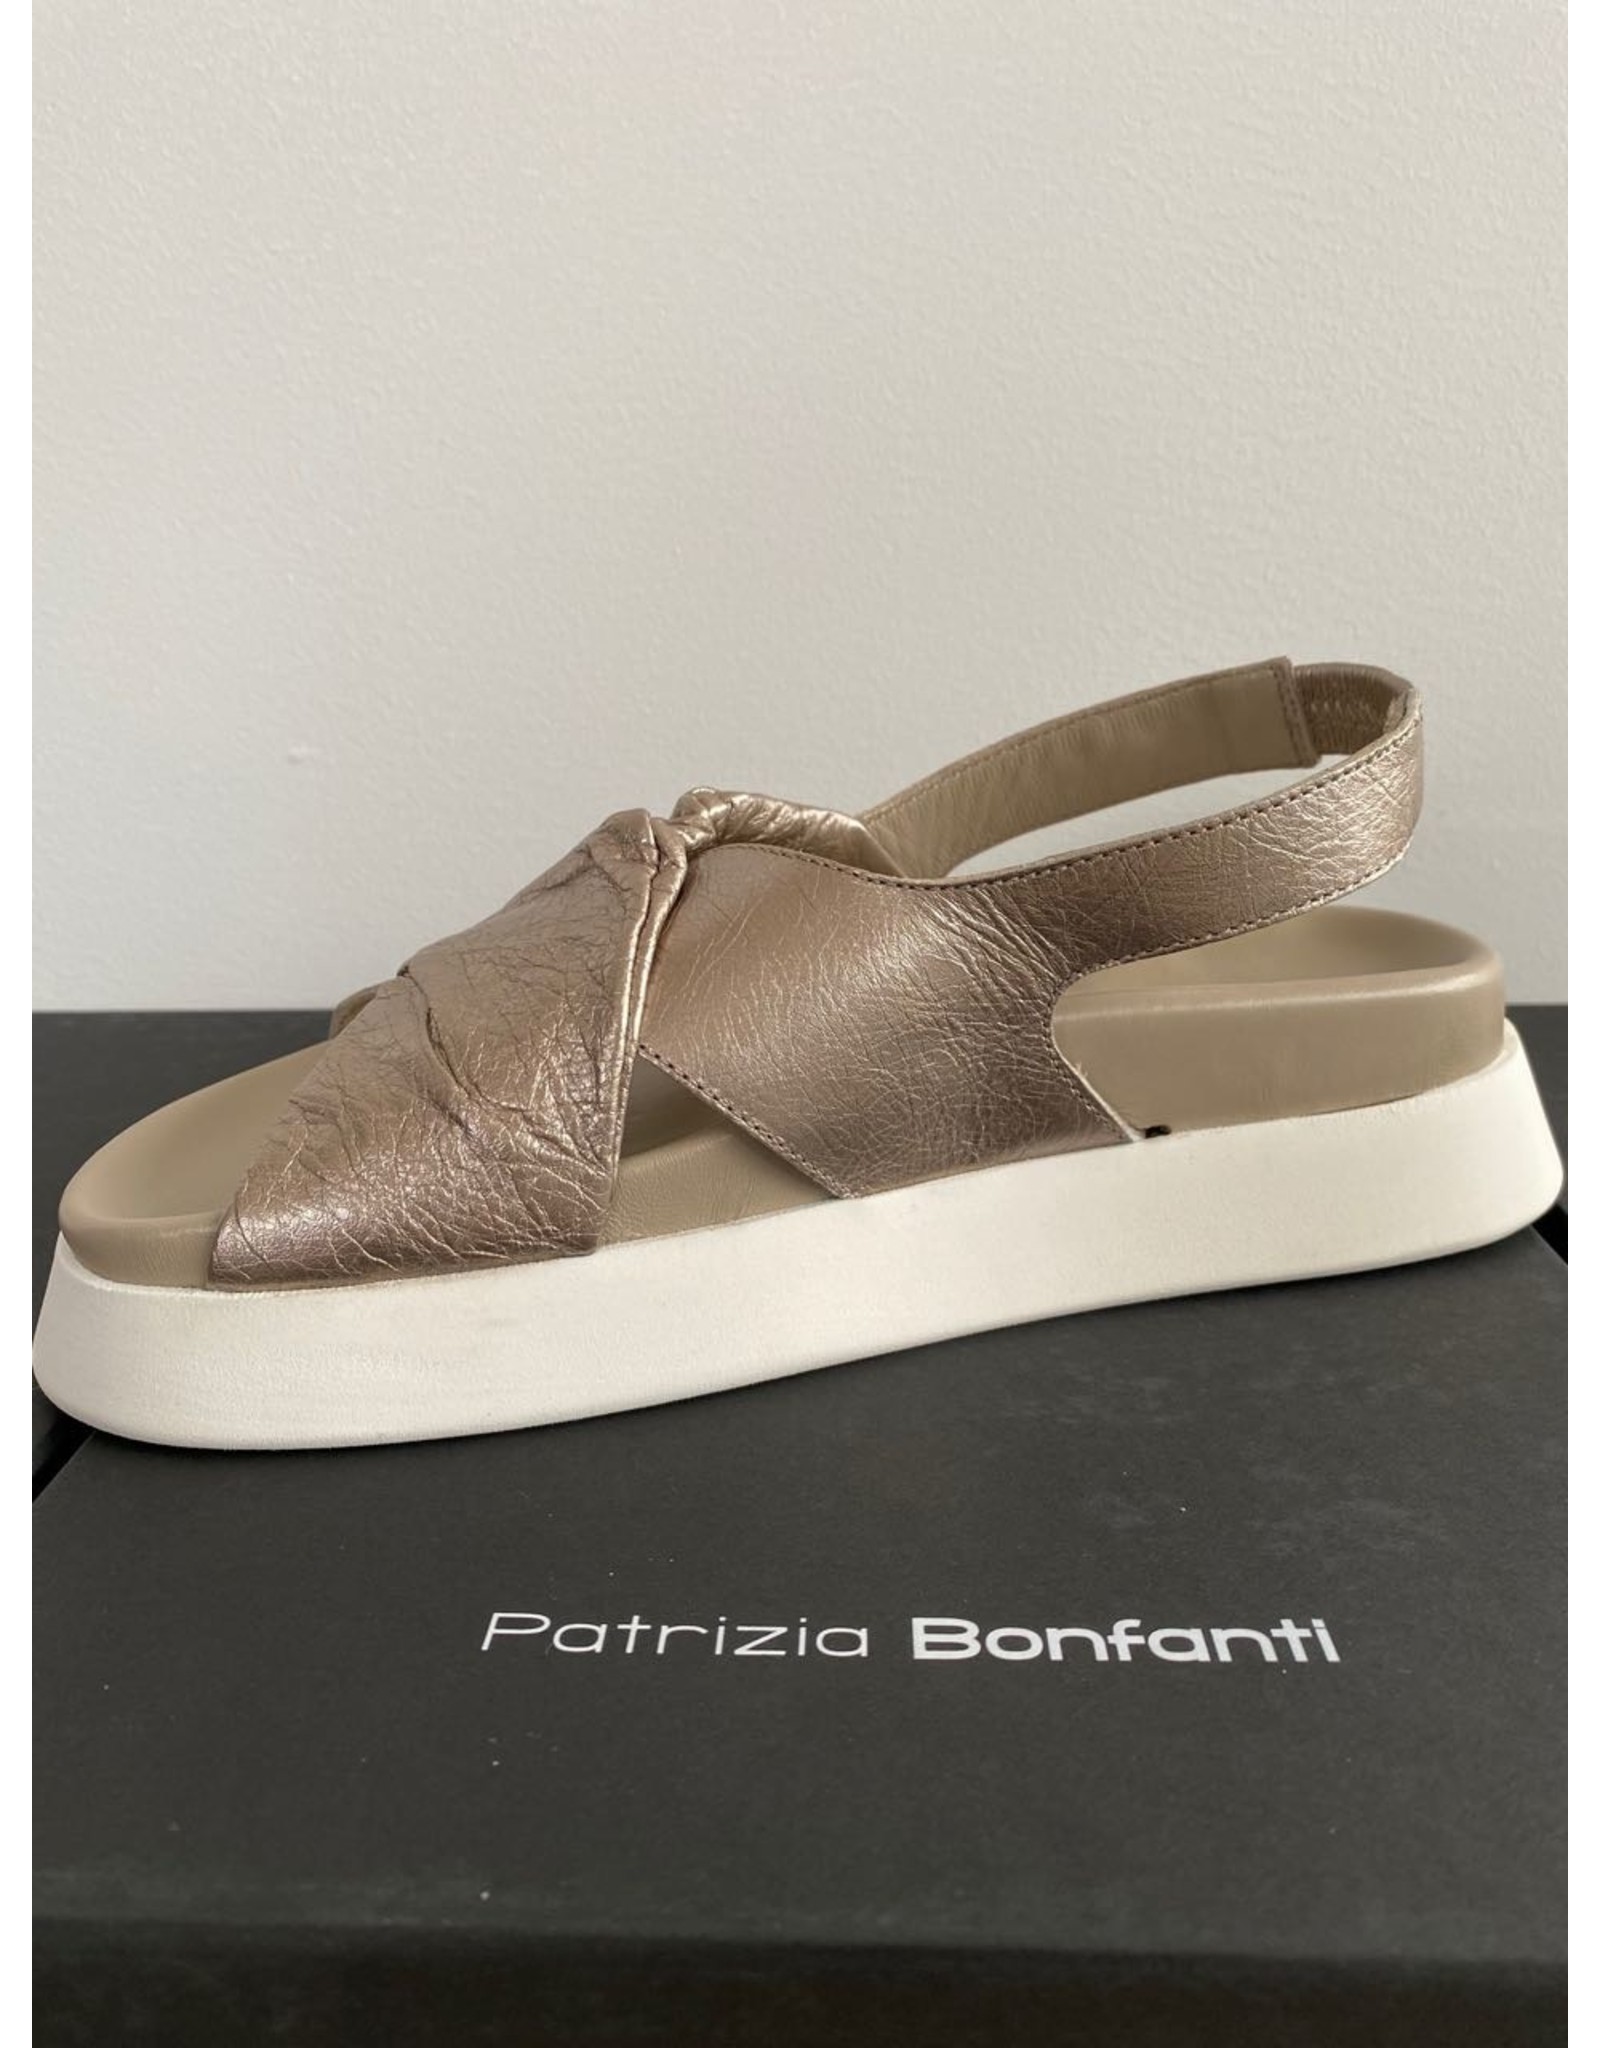 Patrizia Bonfanti Slingback Wedge Sandal